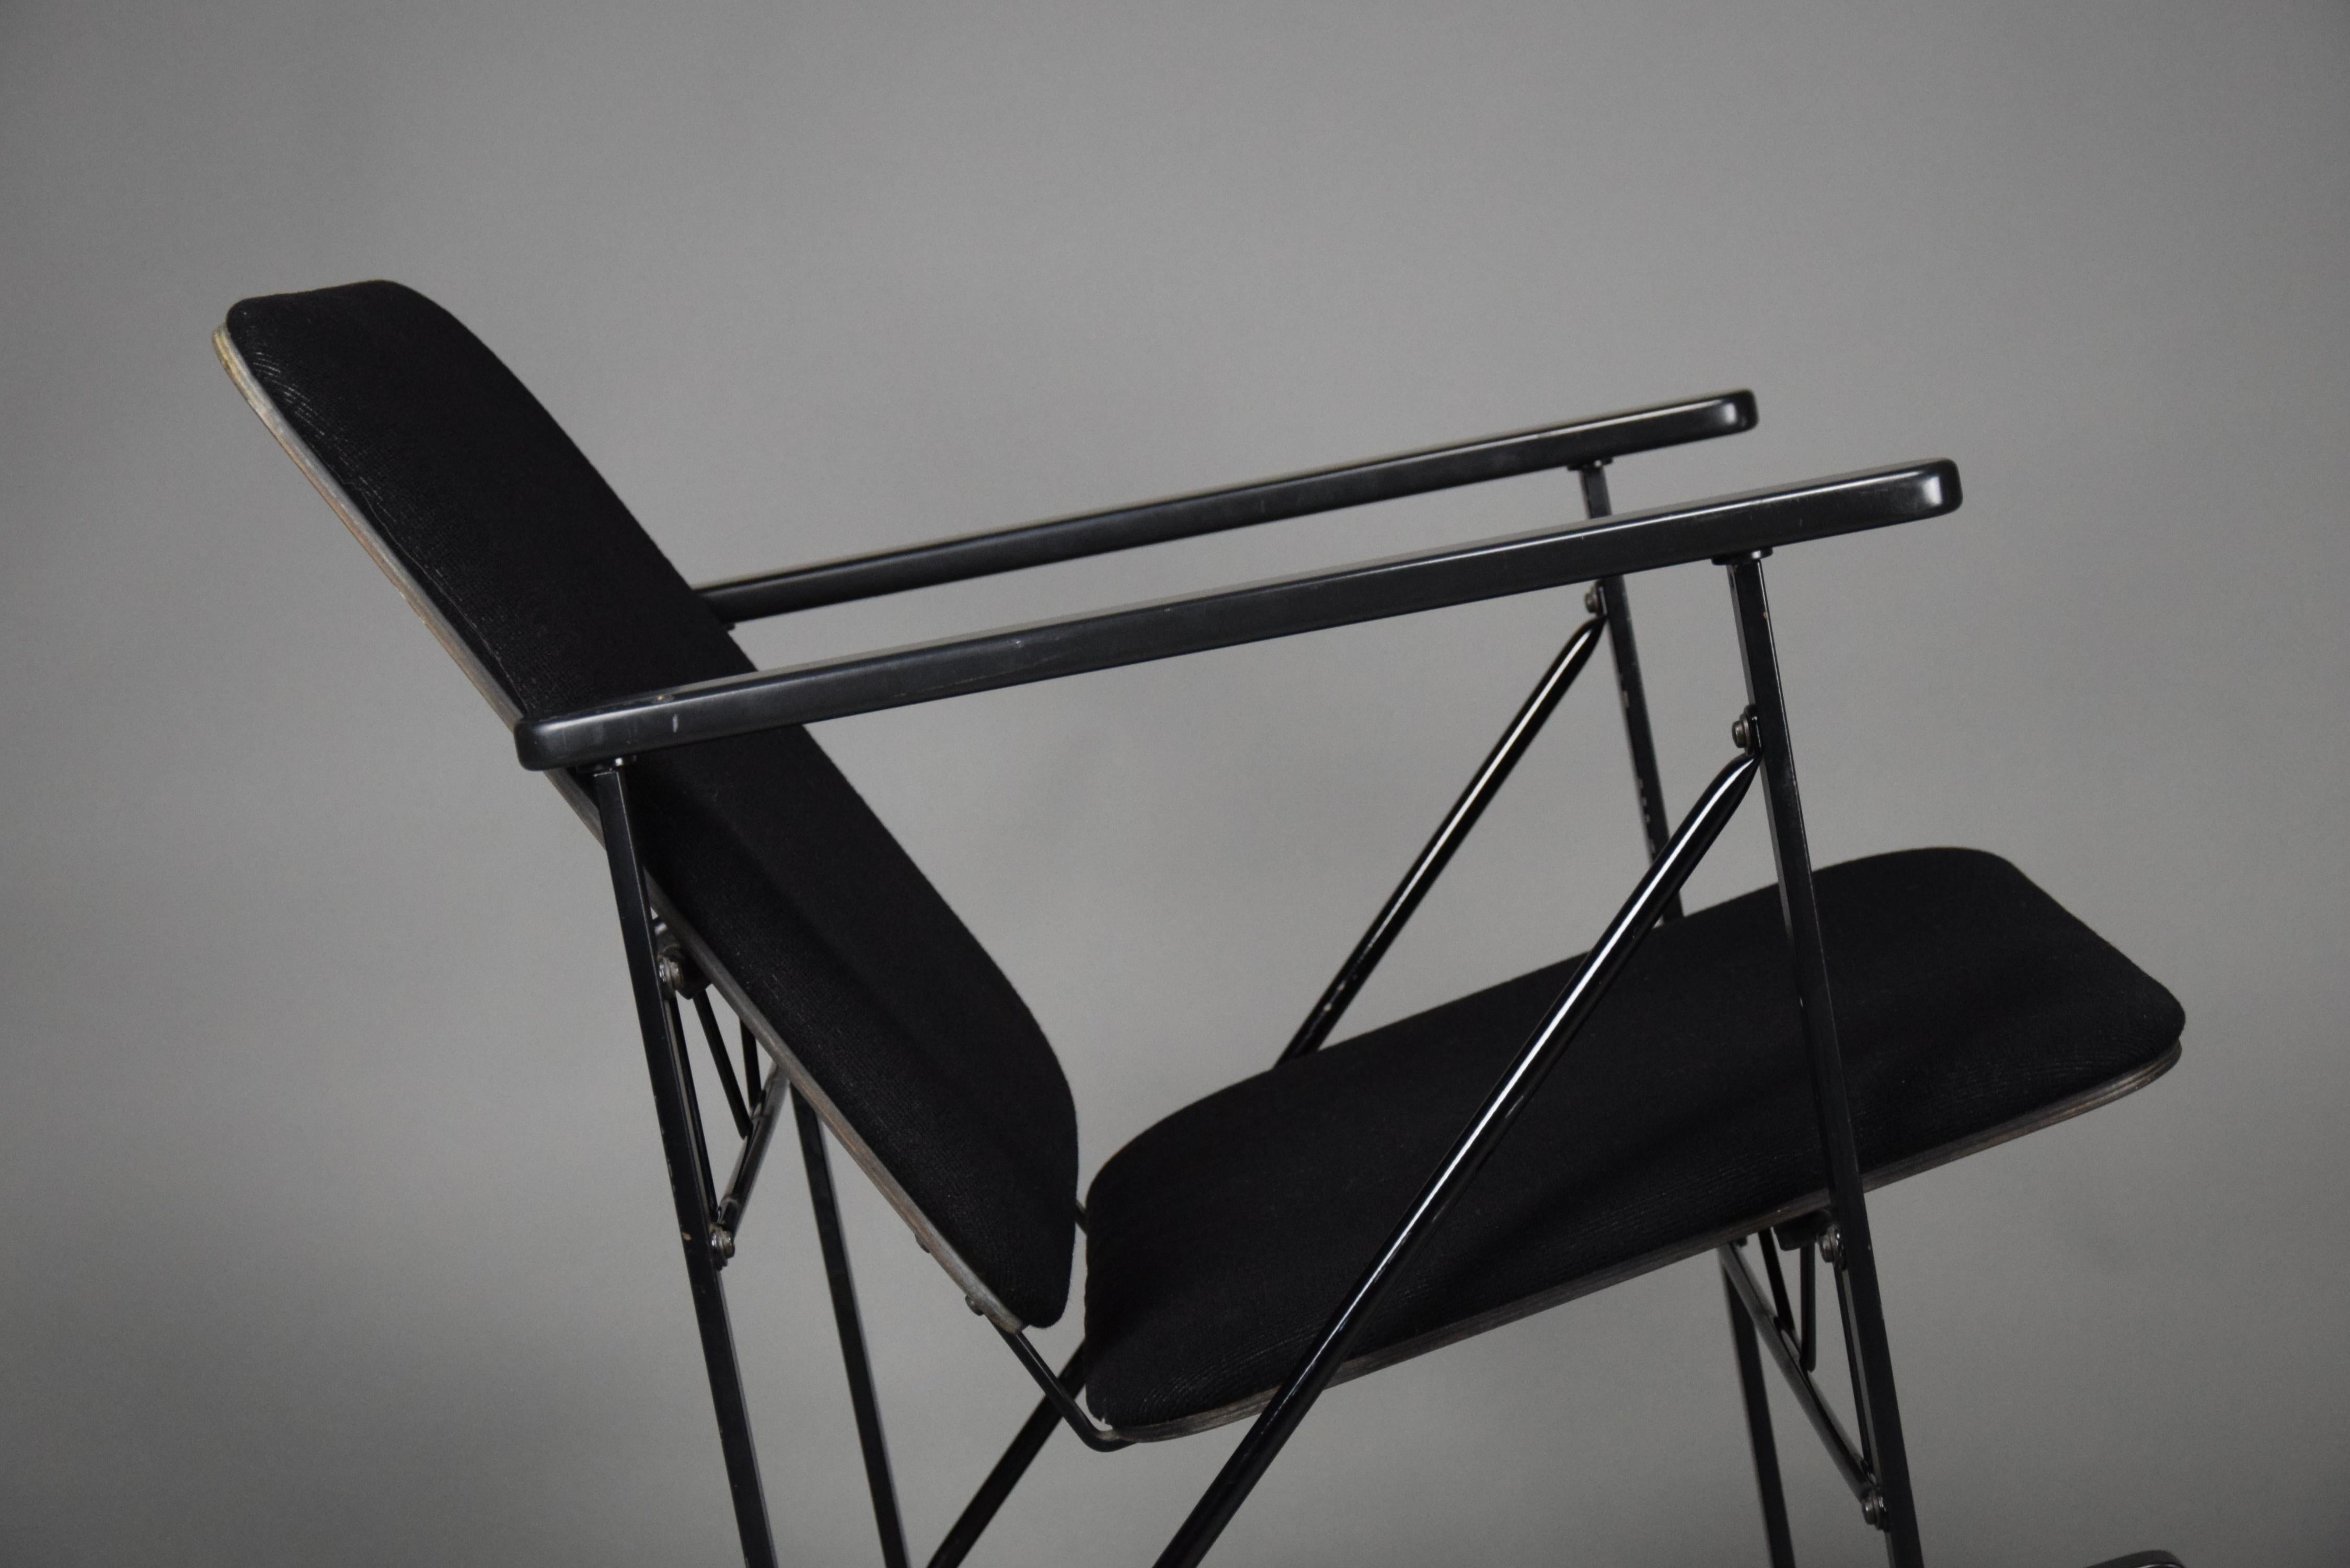 Voici un meuble étonnant - le fauteuil à bascule minimaliste et épuré d'Yrjö Kukkapuro pour Avarte. Cette chaise est un véritable exemple de design moderne, avec un accent sur la forme et la fonction qui crée un équilibre parfait entre style et